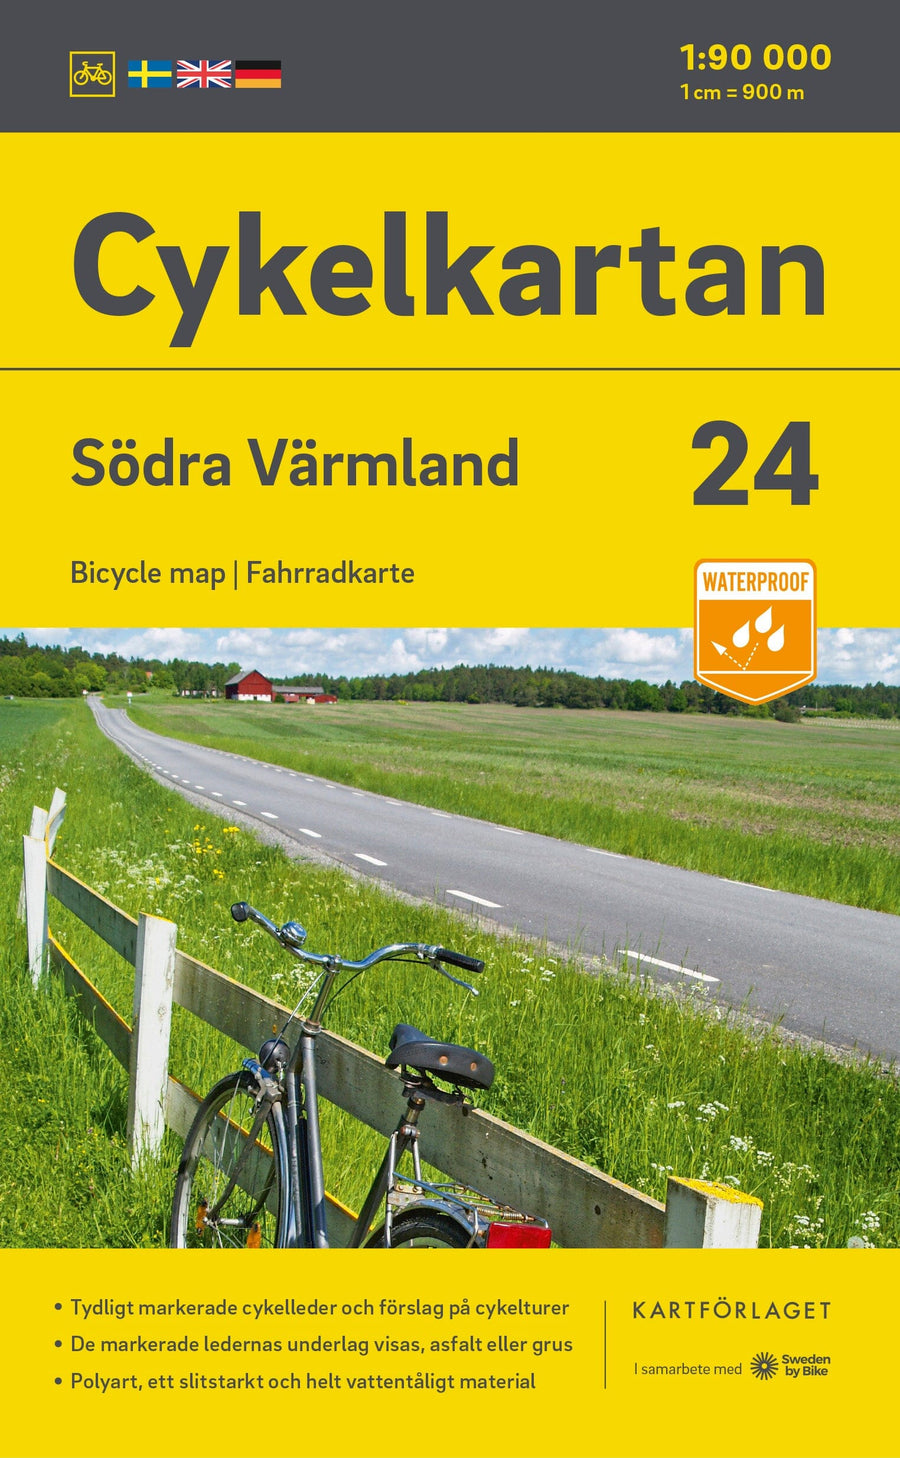 Carte cycliste n° 24 - Värmland Sud (Suède) | Norstedts carte pliée Norstedts 